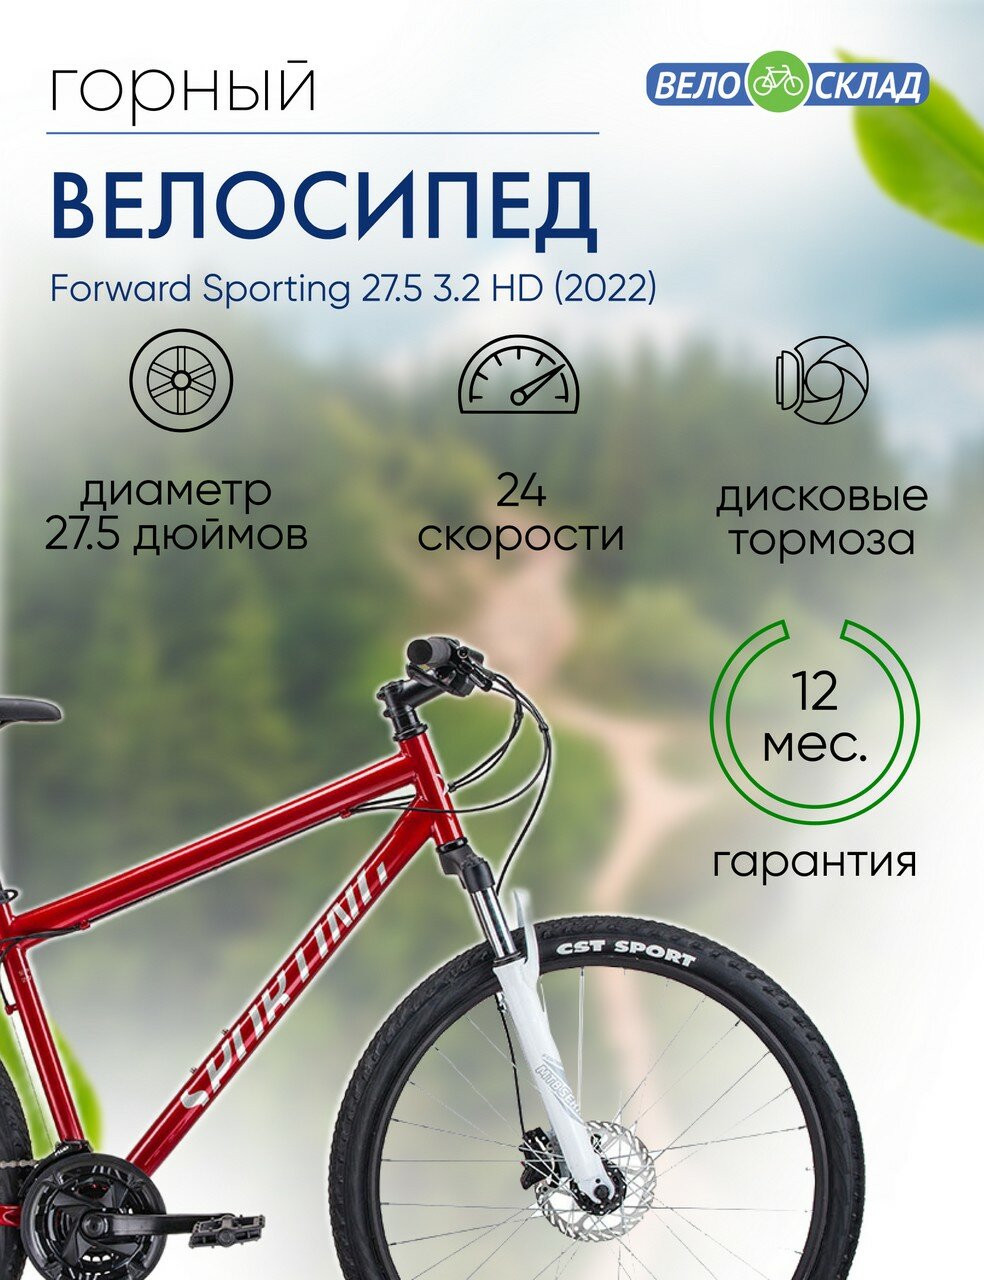 Горный велосипед Forward Sporting 27.5 3.2 HD, год 2022, цвет Красный-Серебристый, ростовка 19